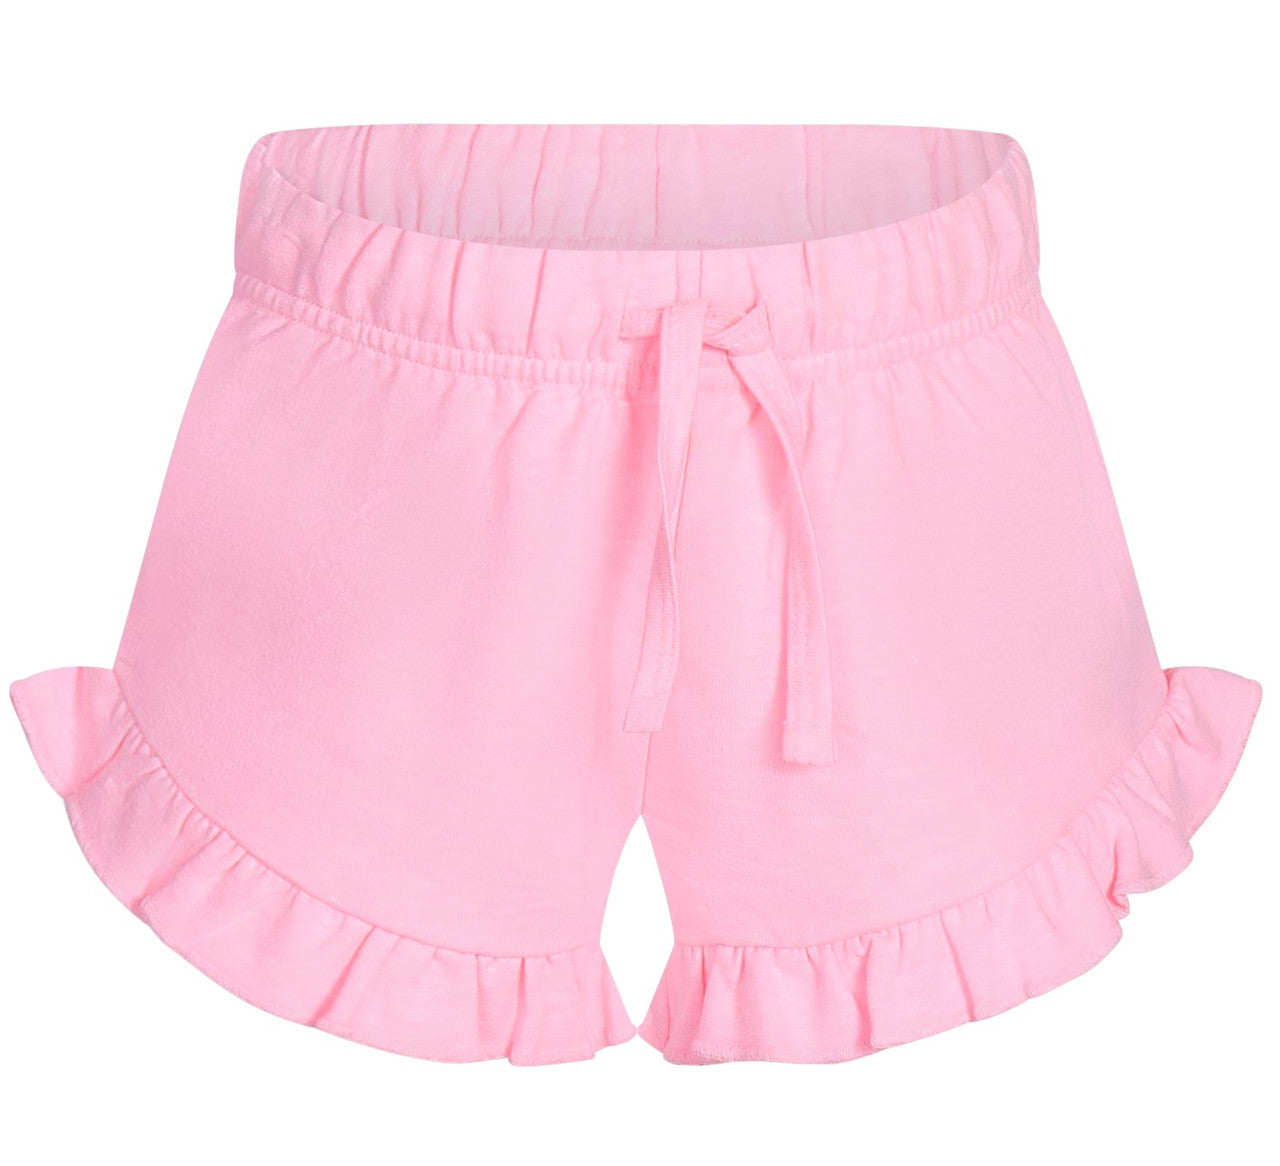 FUN FUN Neon Pink Shorts FNBSO16940